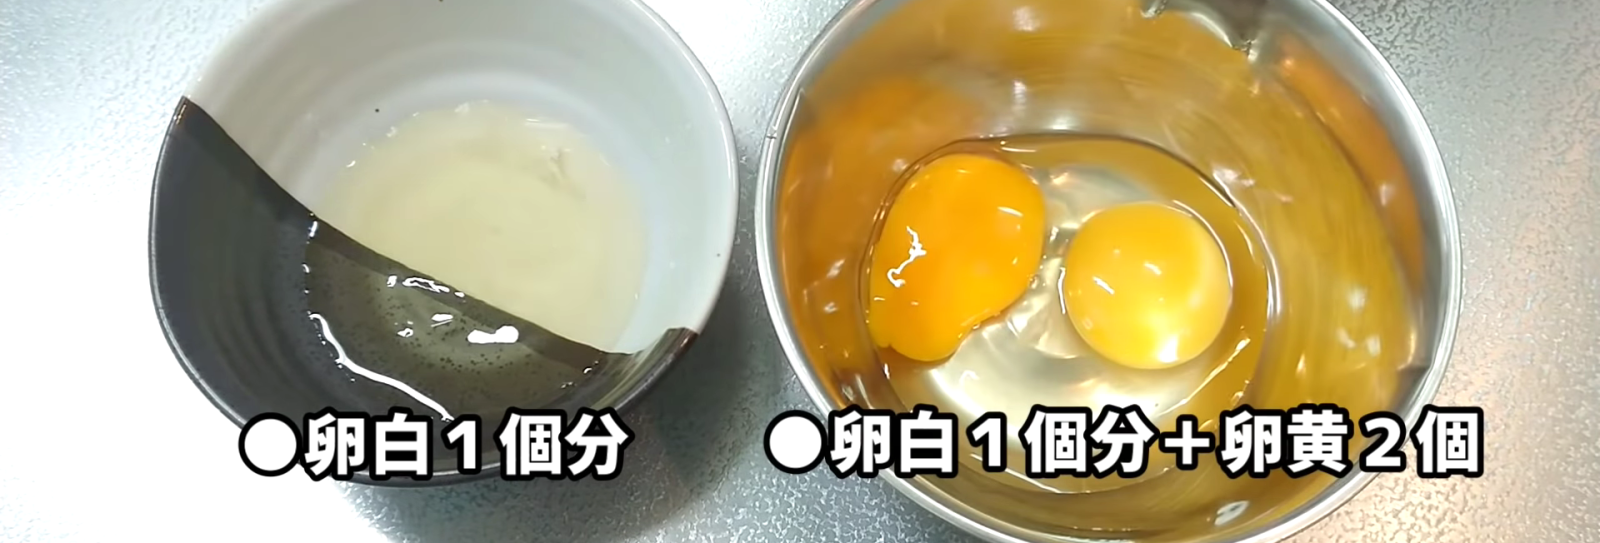 黄身と白身にわけていれた卵